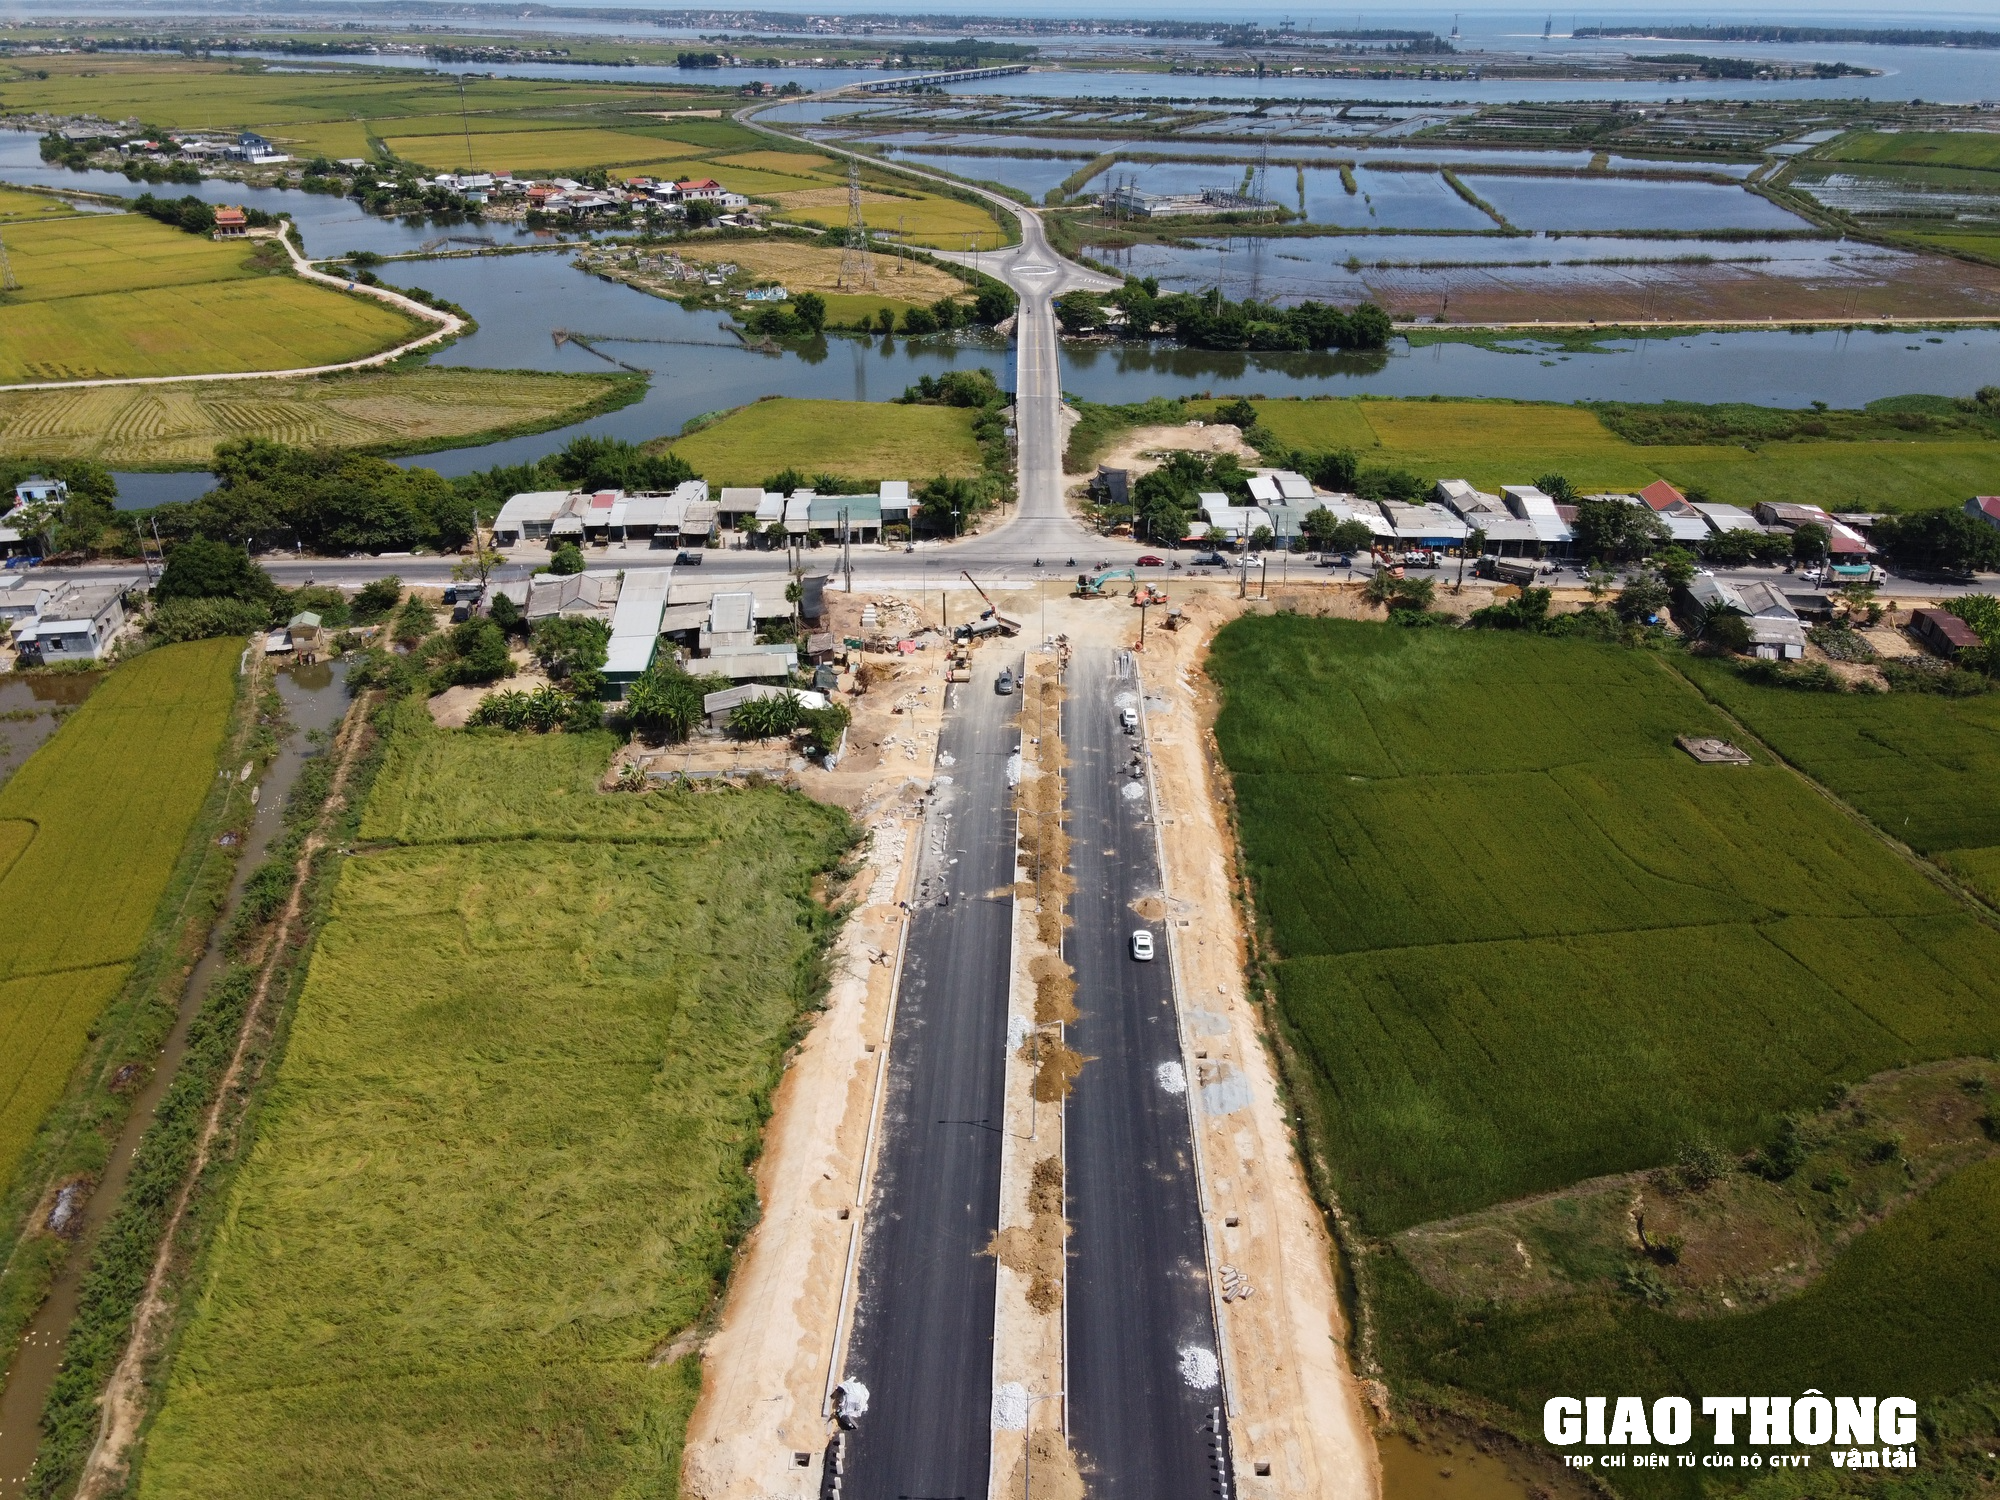 Chiêm ngưỡng tuyến đường hàng trăm tỷ đồng sắp thông xe ở Thừa Thiên Huế - Ảnh 4.